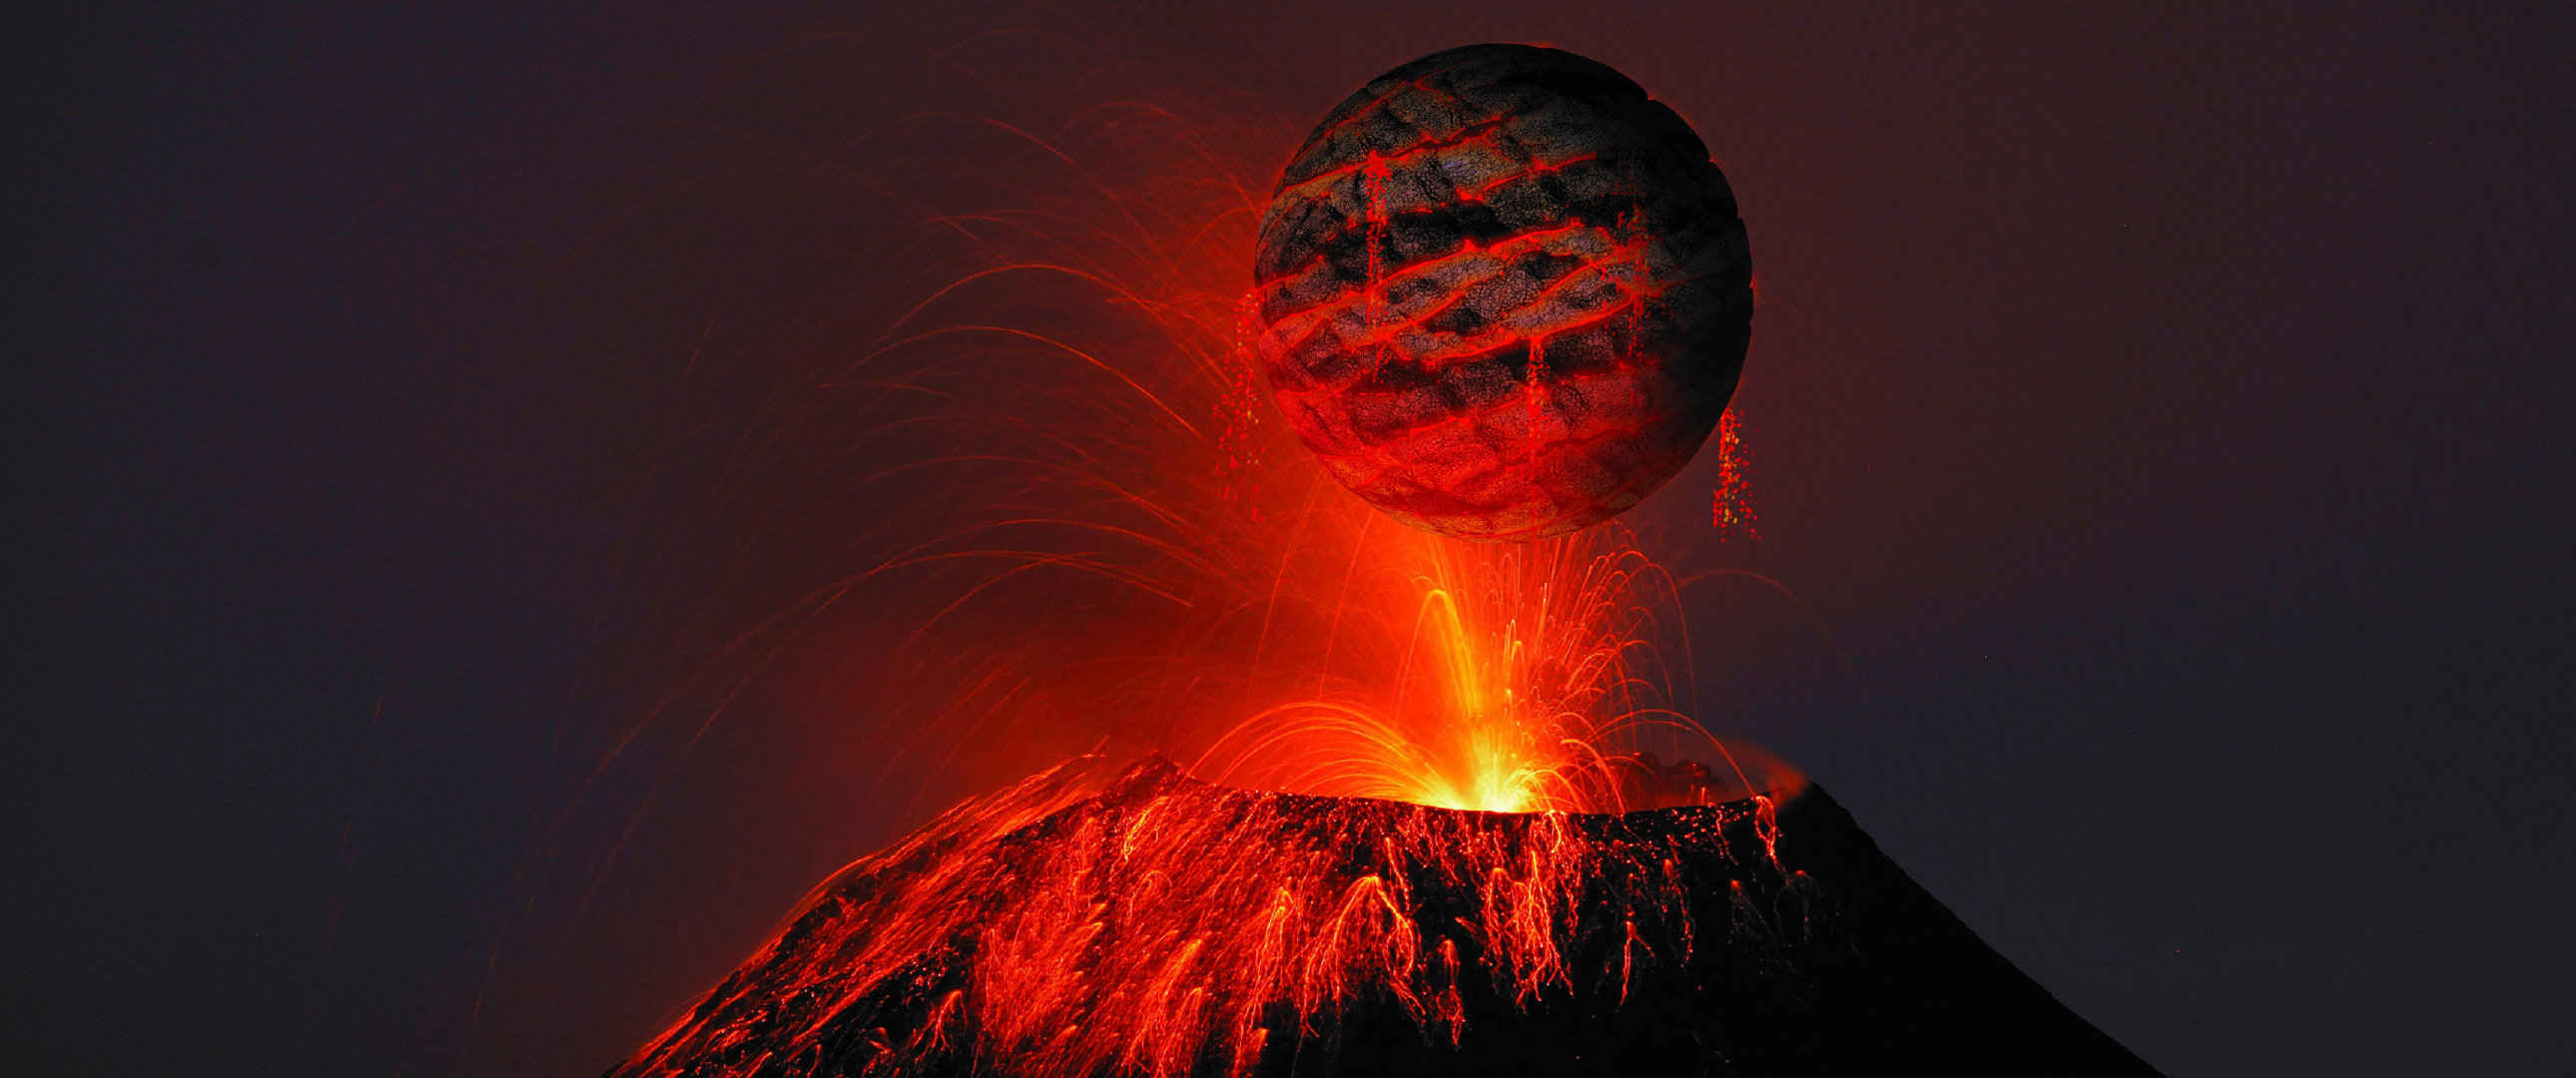 火山超帅炫酷壁纸-